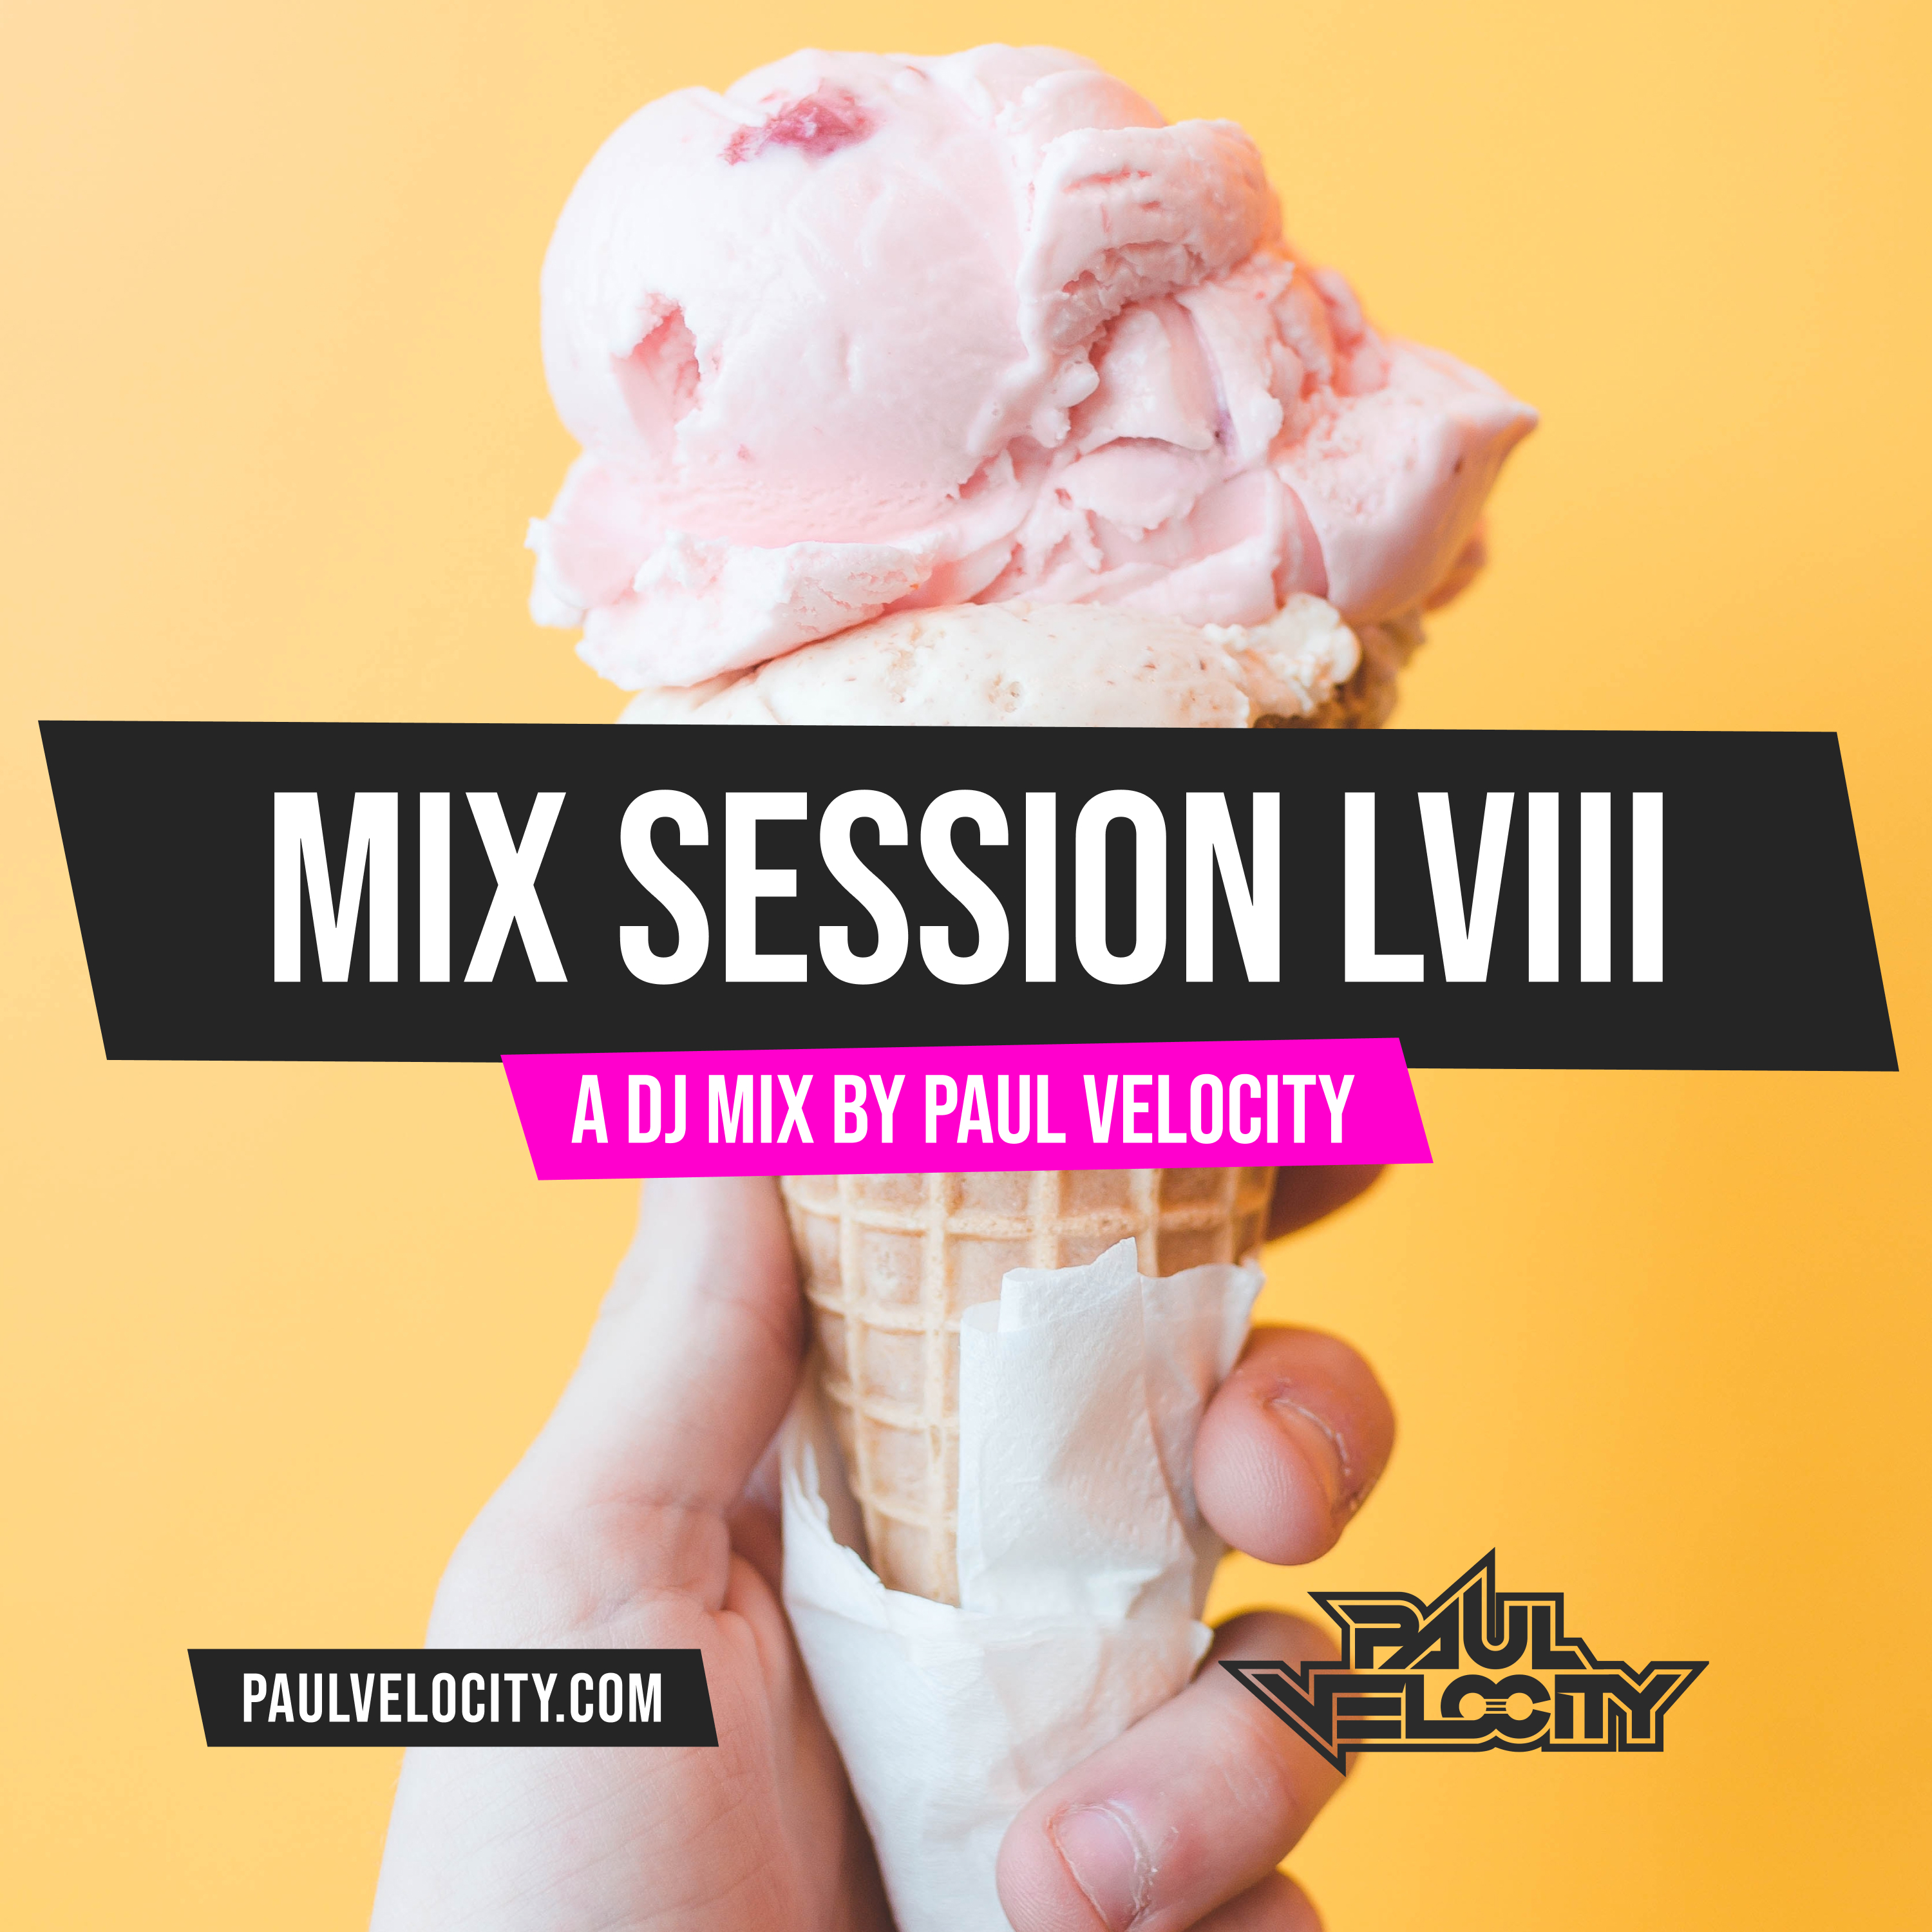 Mix Session LVIII